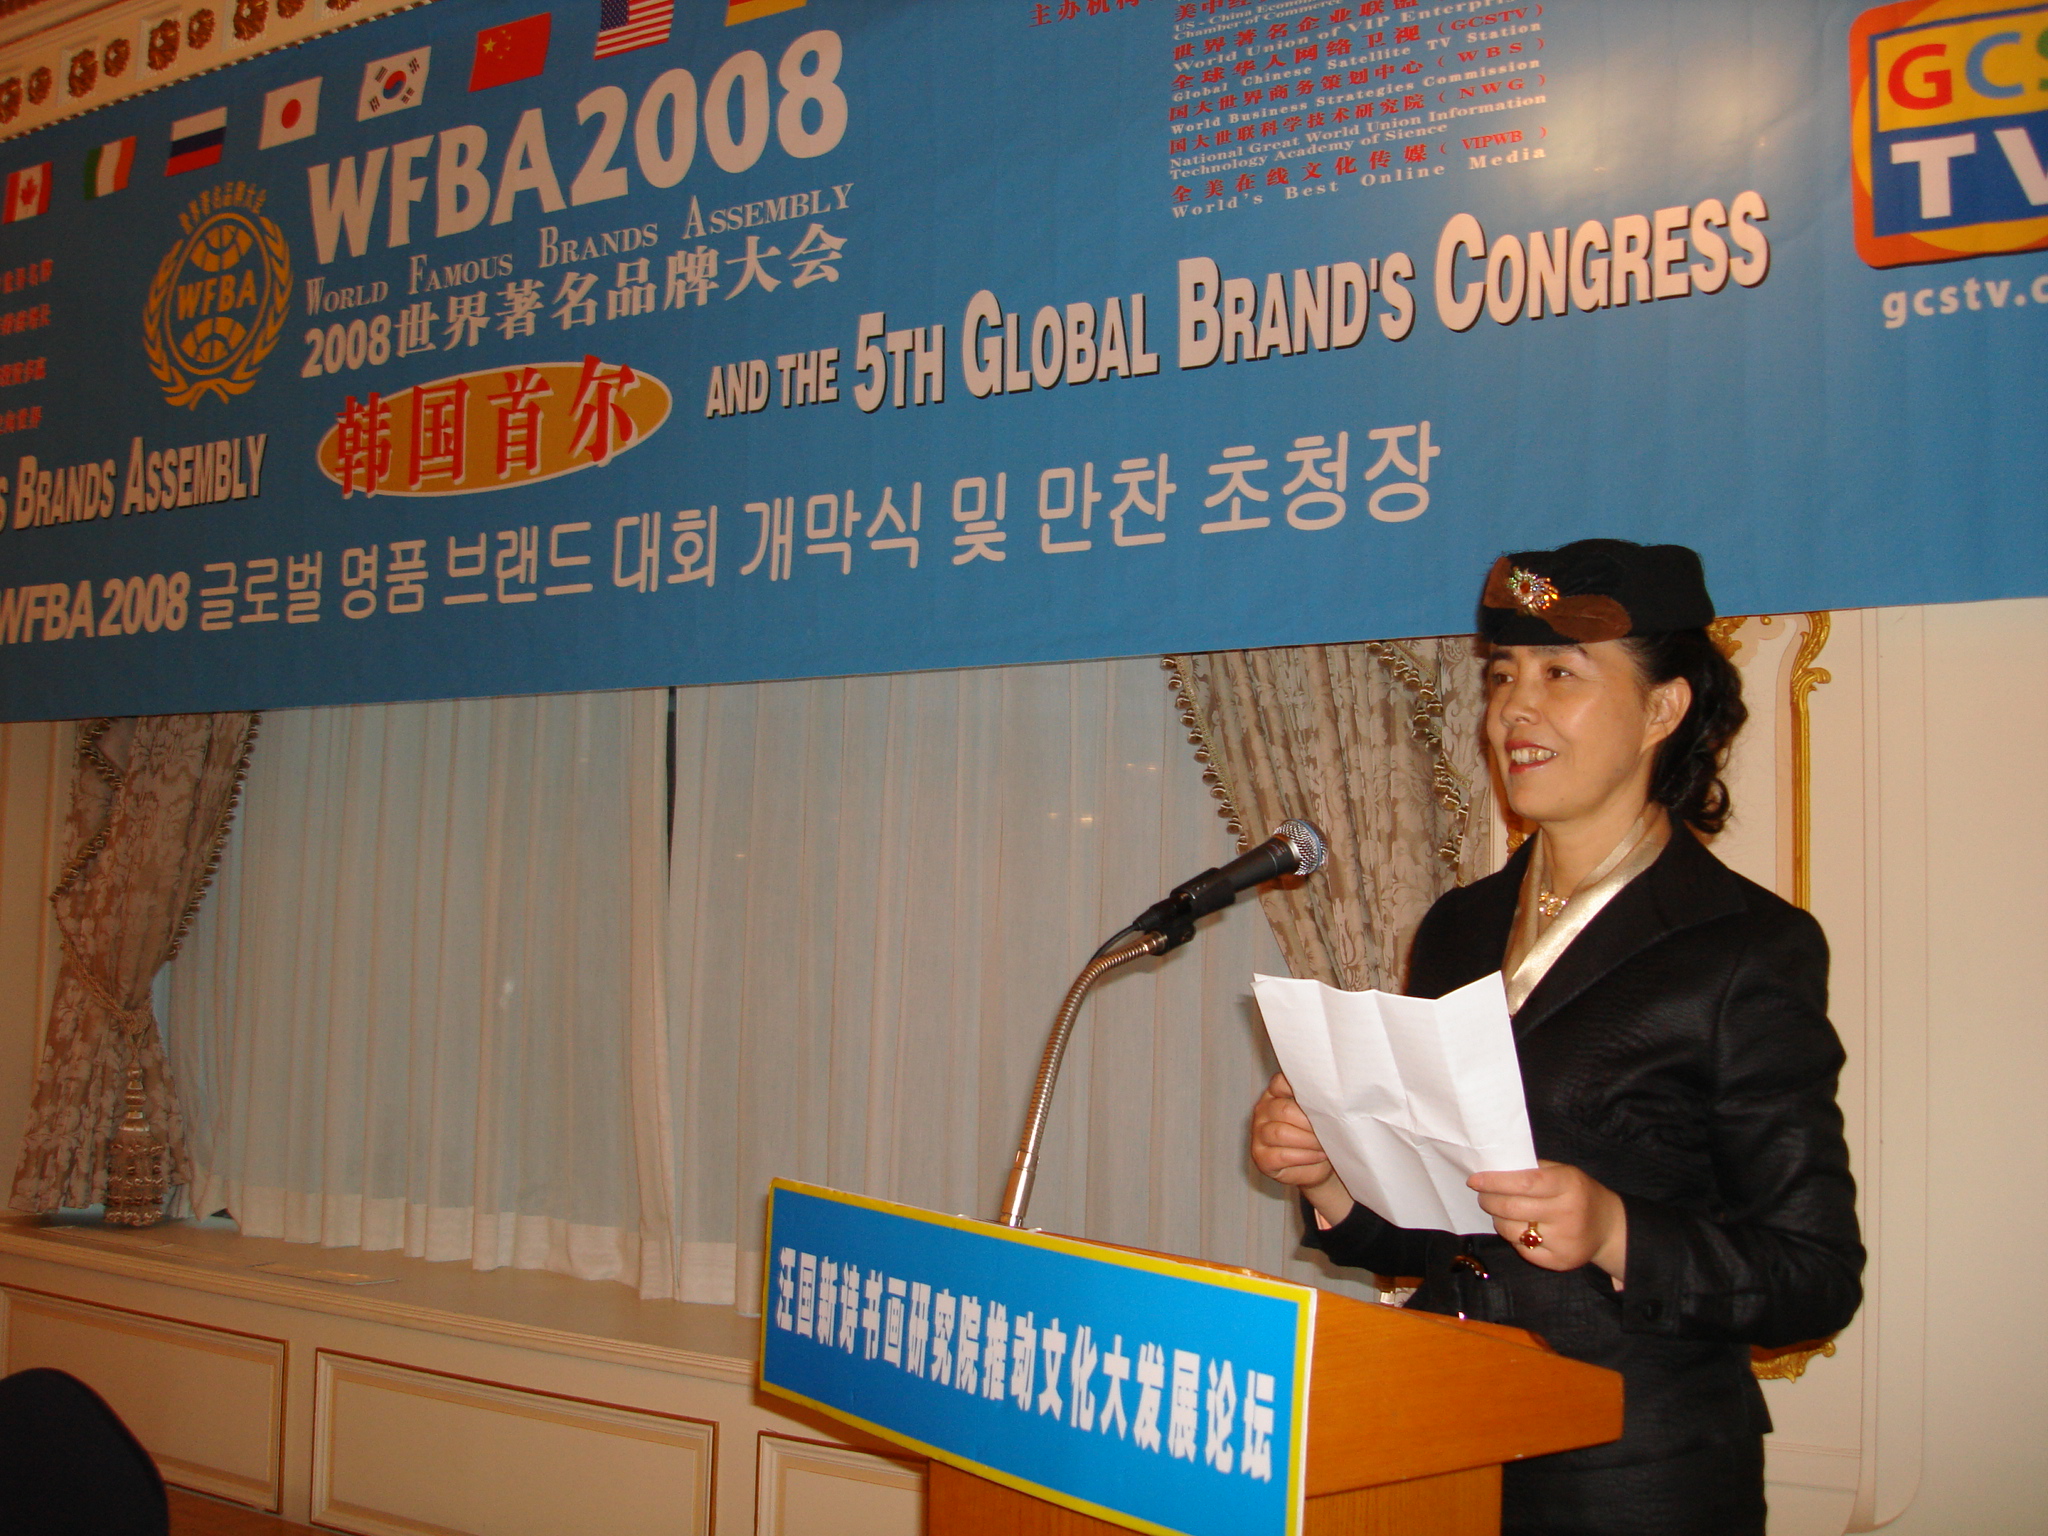 2008世界著名品牌大會鄭桂蘭女士發言